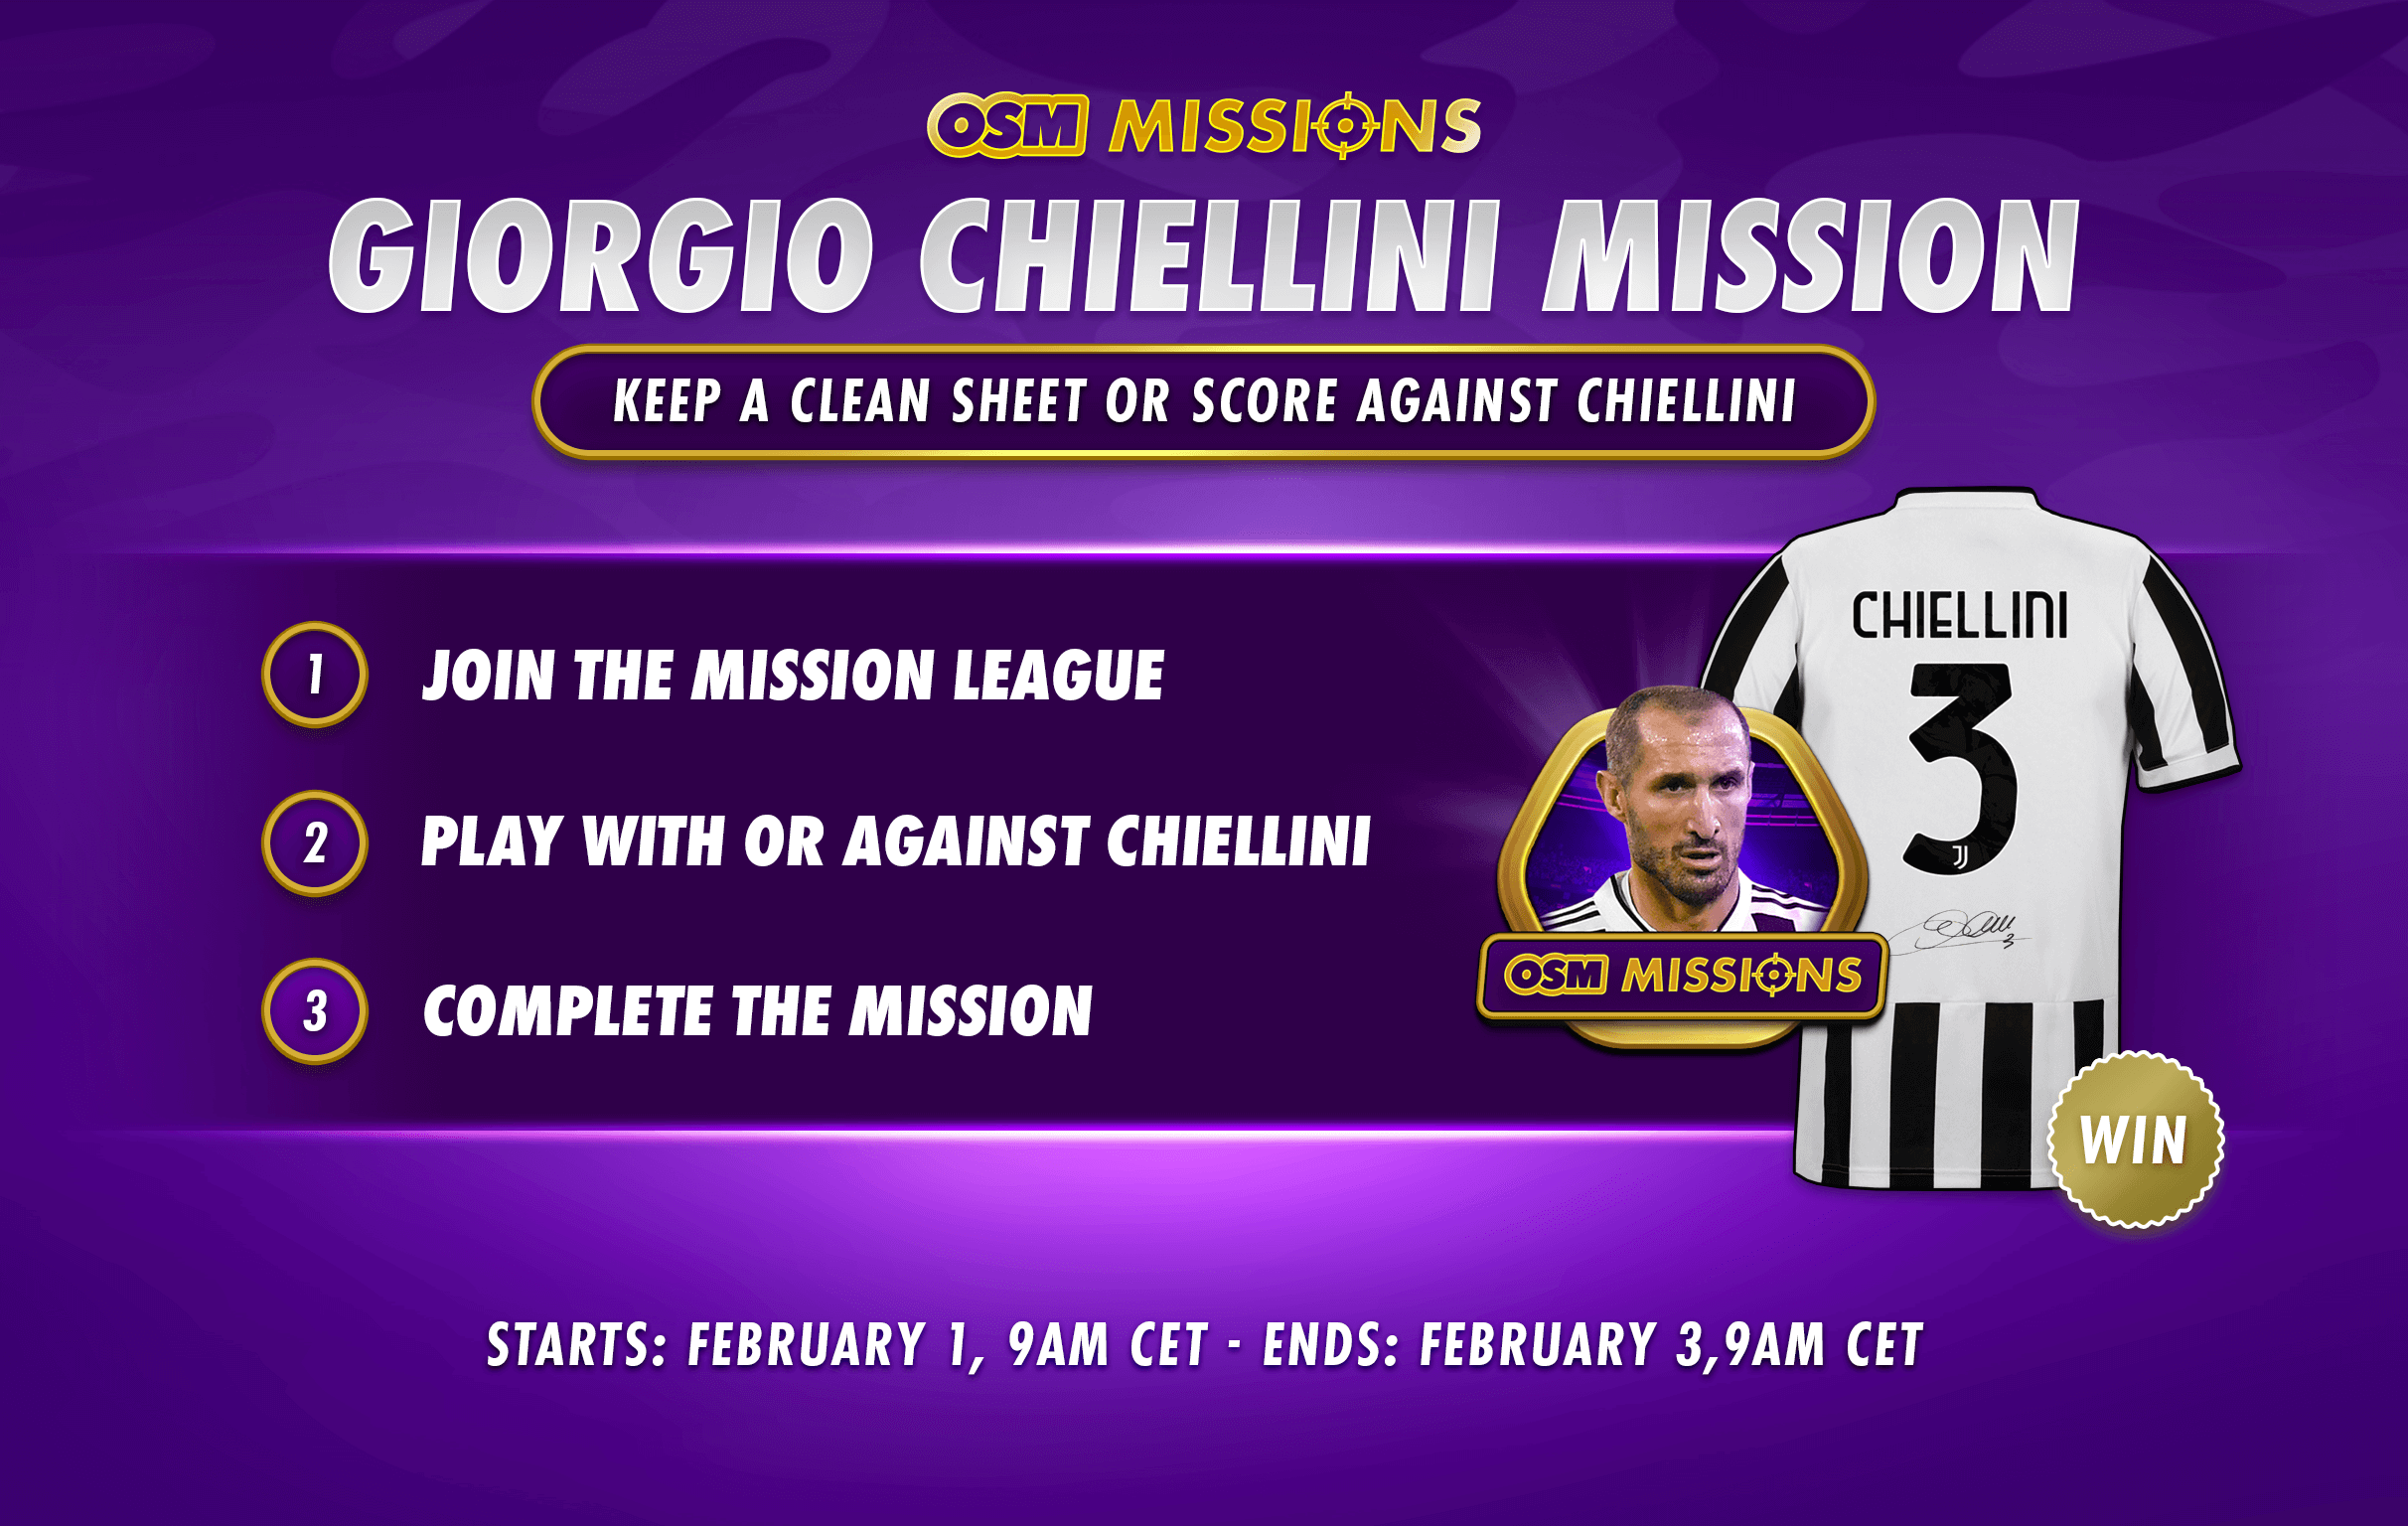 CP_Giorgio Chiellini Mission_REDDIT.png